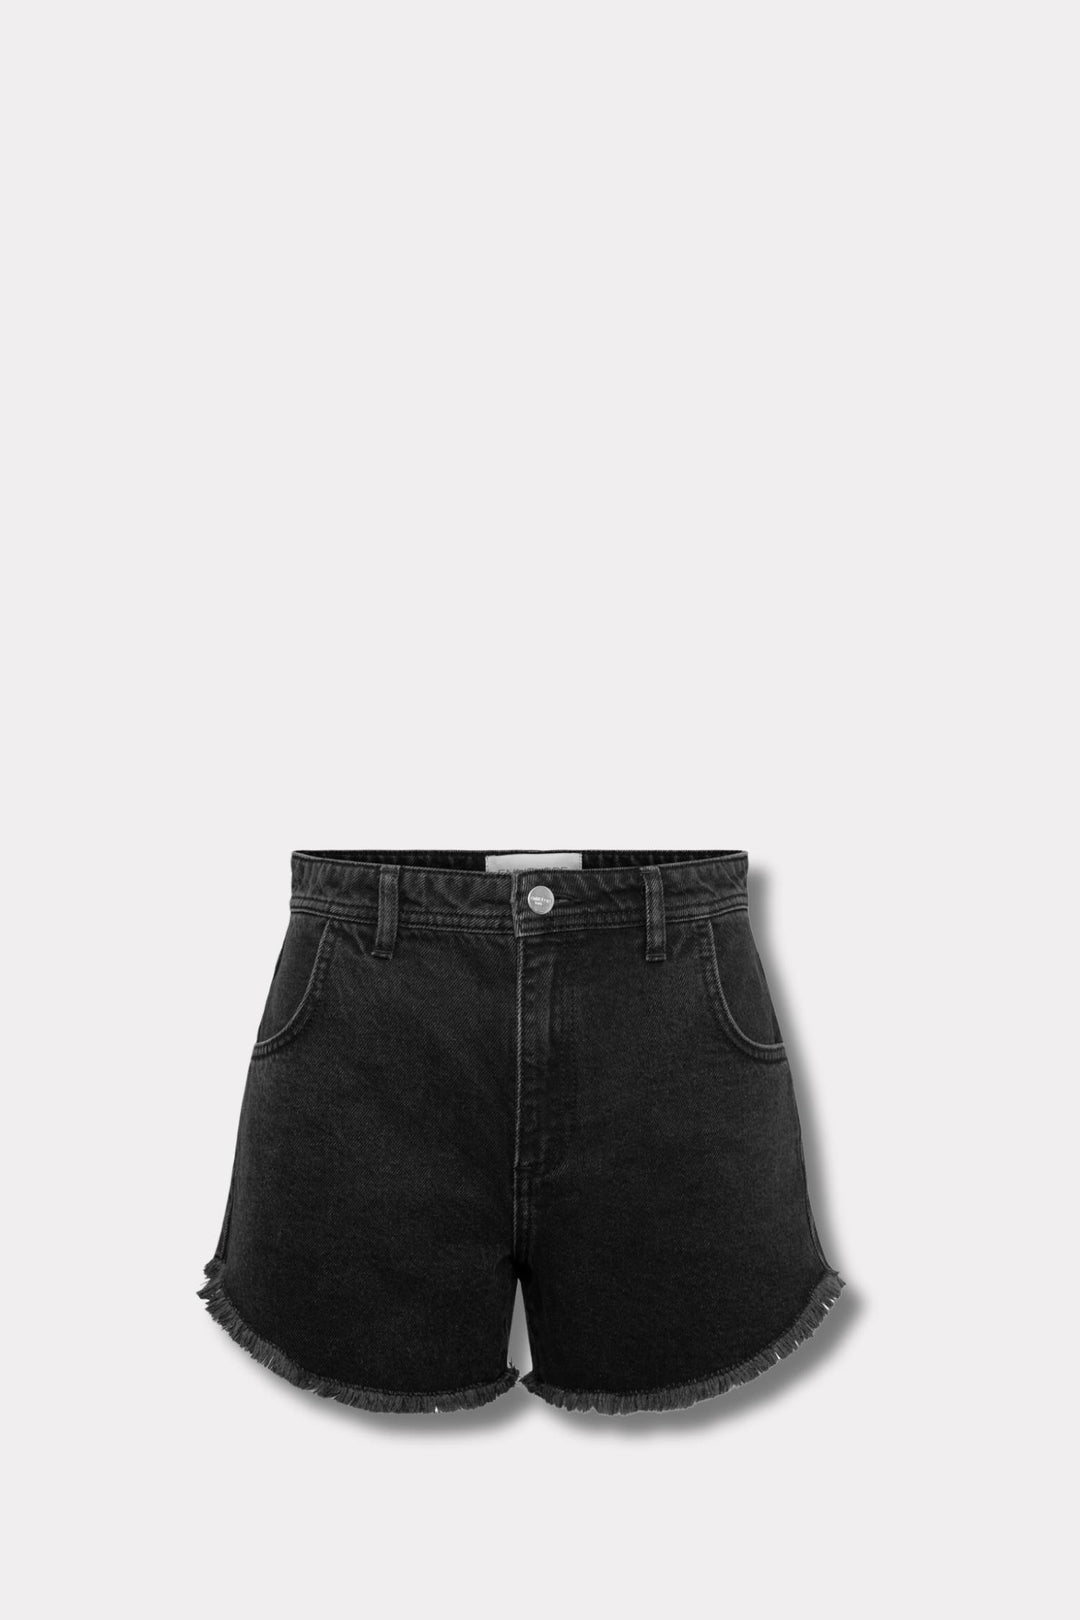 Porto Shorts- Washed Black